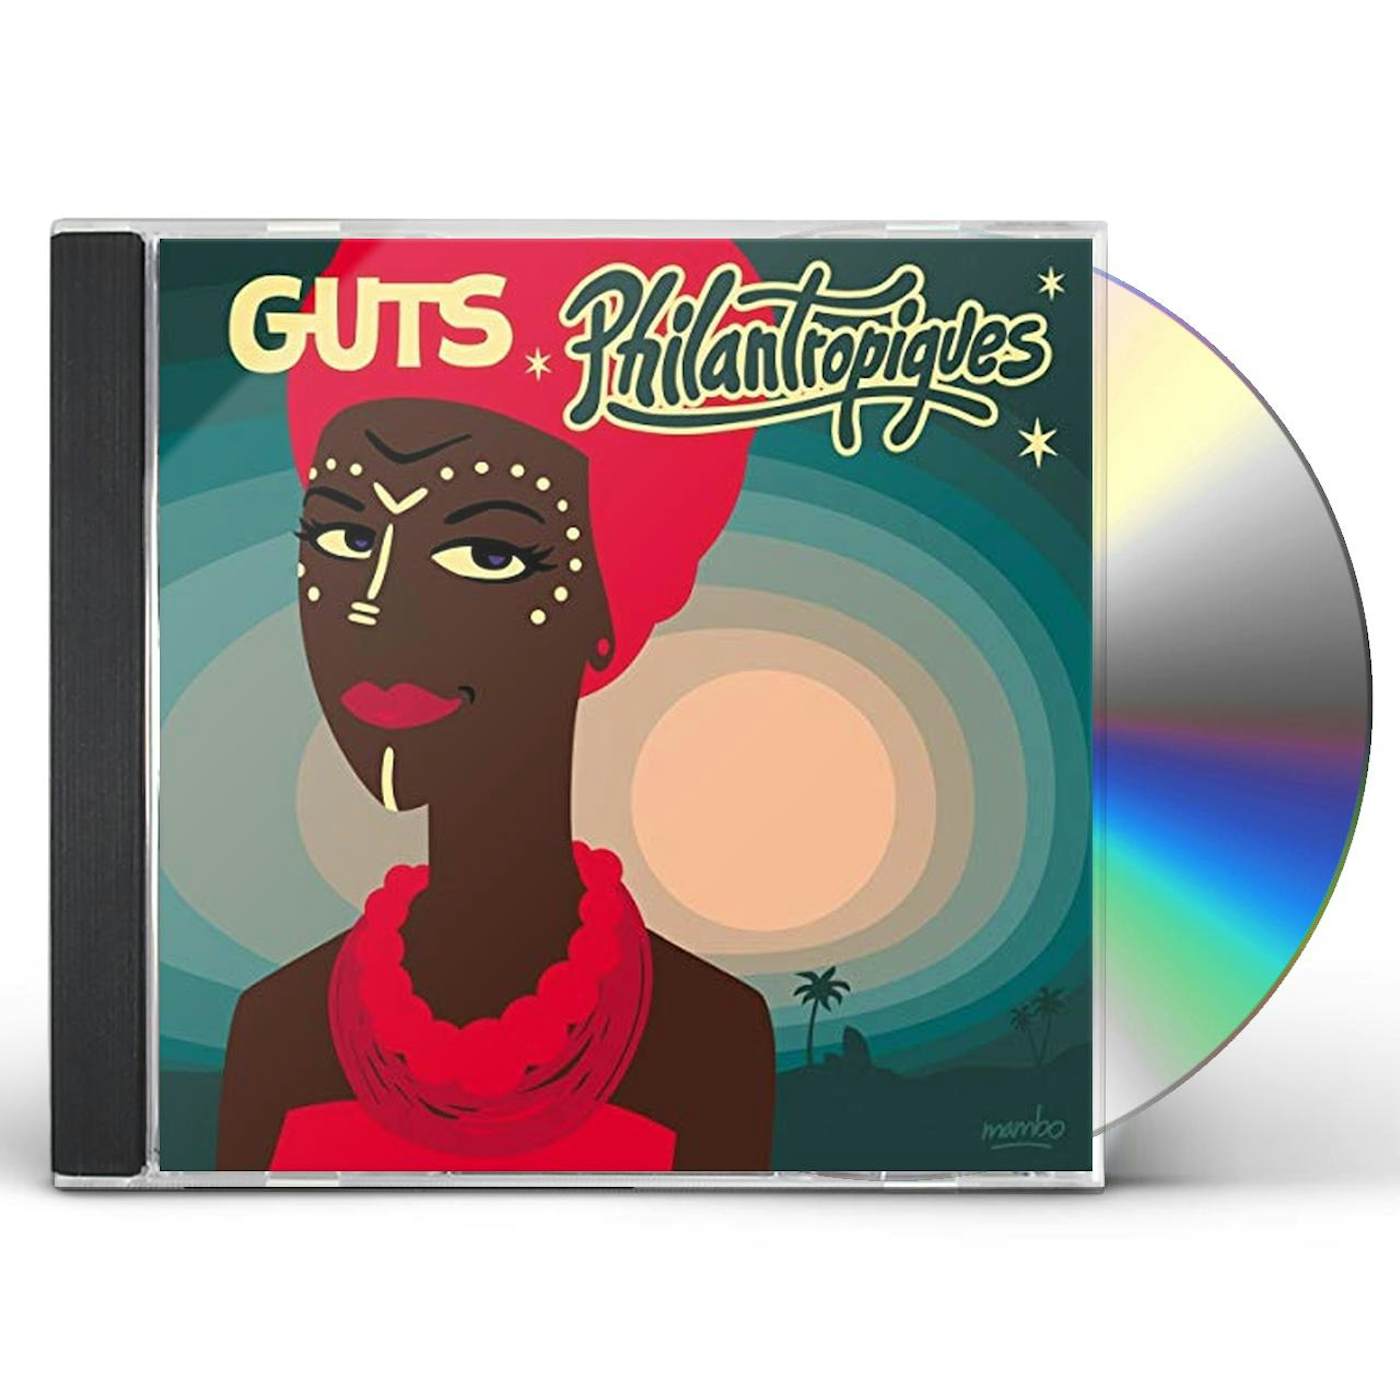  GUTS[LP]: CDs y Vinilo